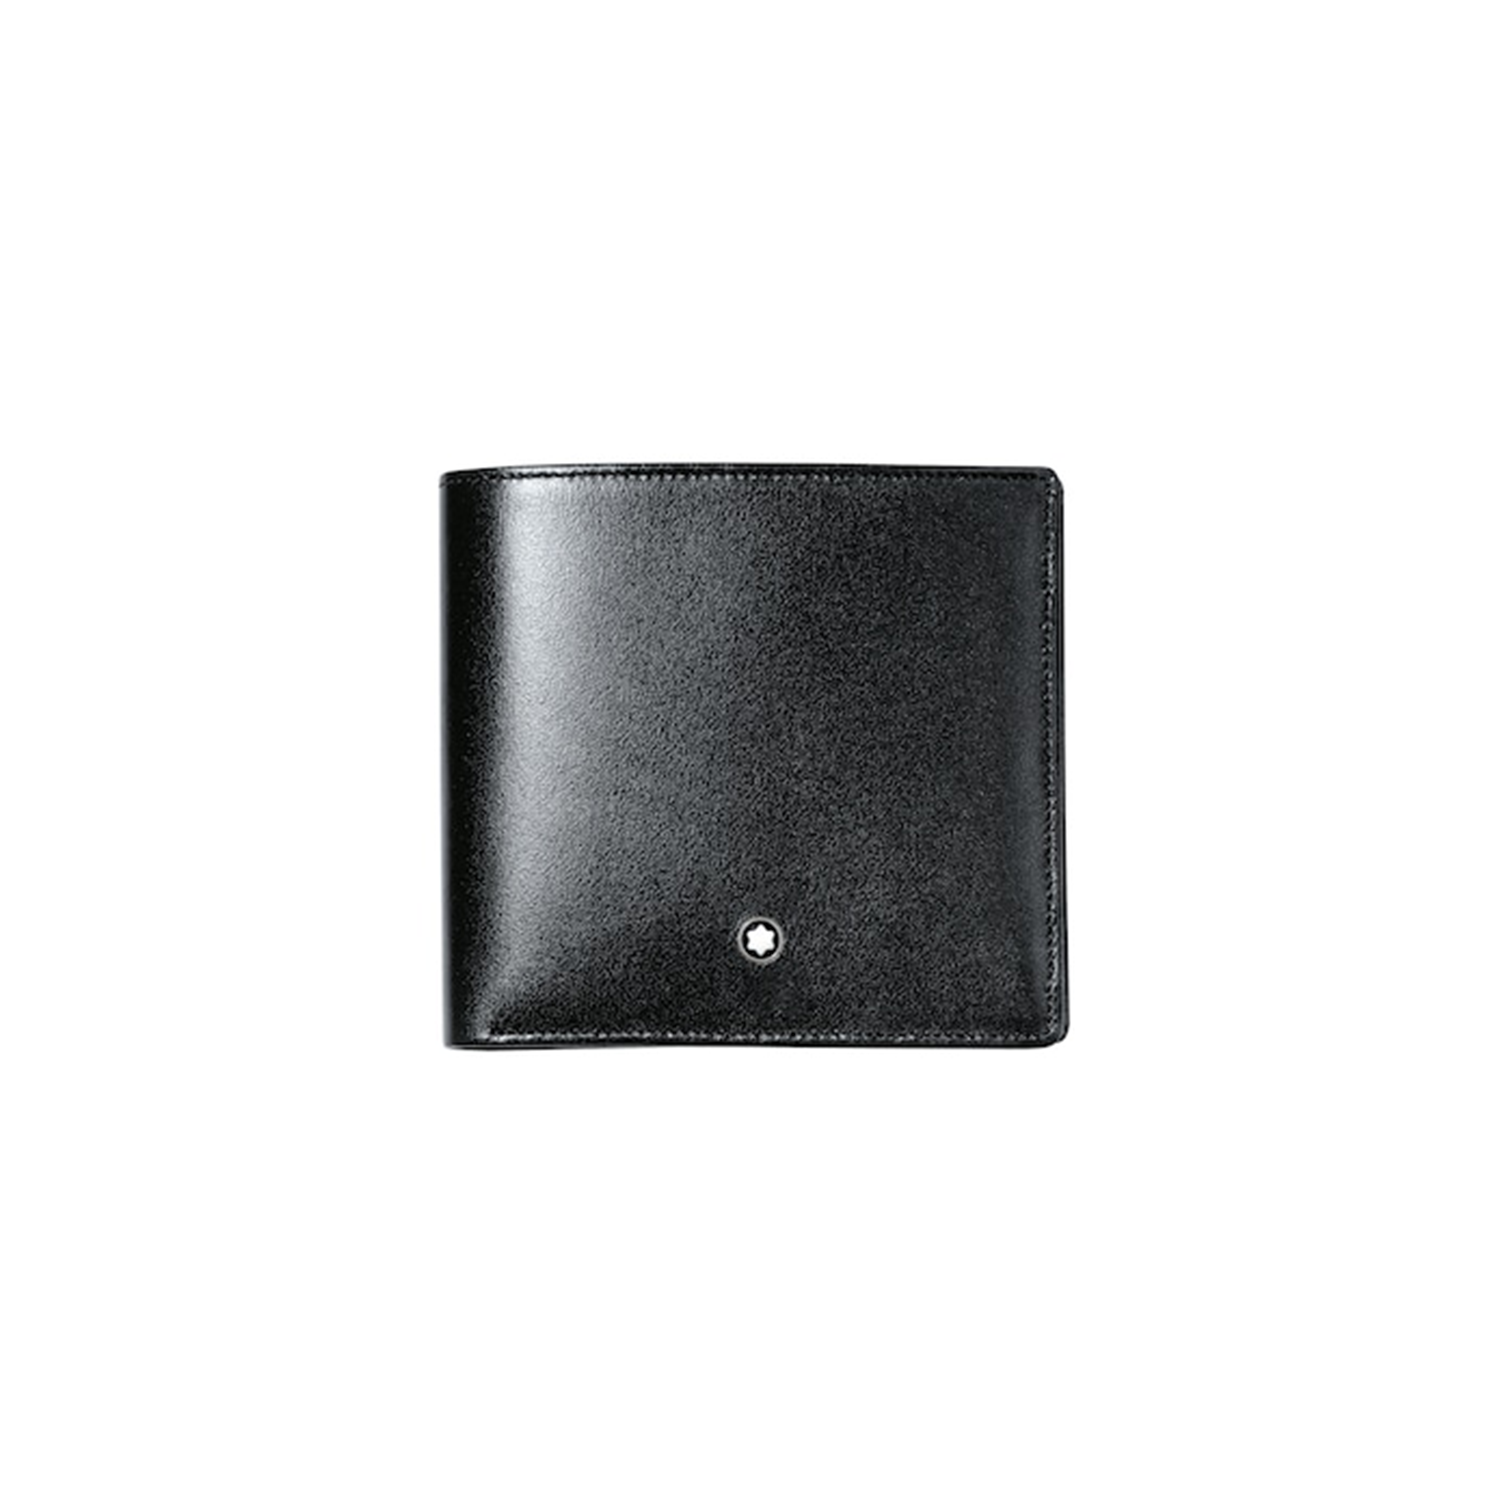 Meisterstück Wallet 8cc 7163 * Montblanc Lederwaren